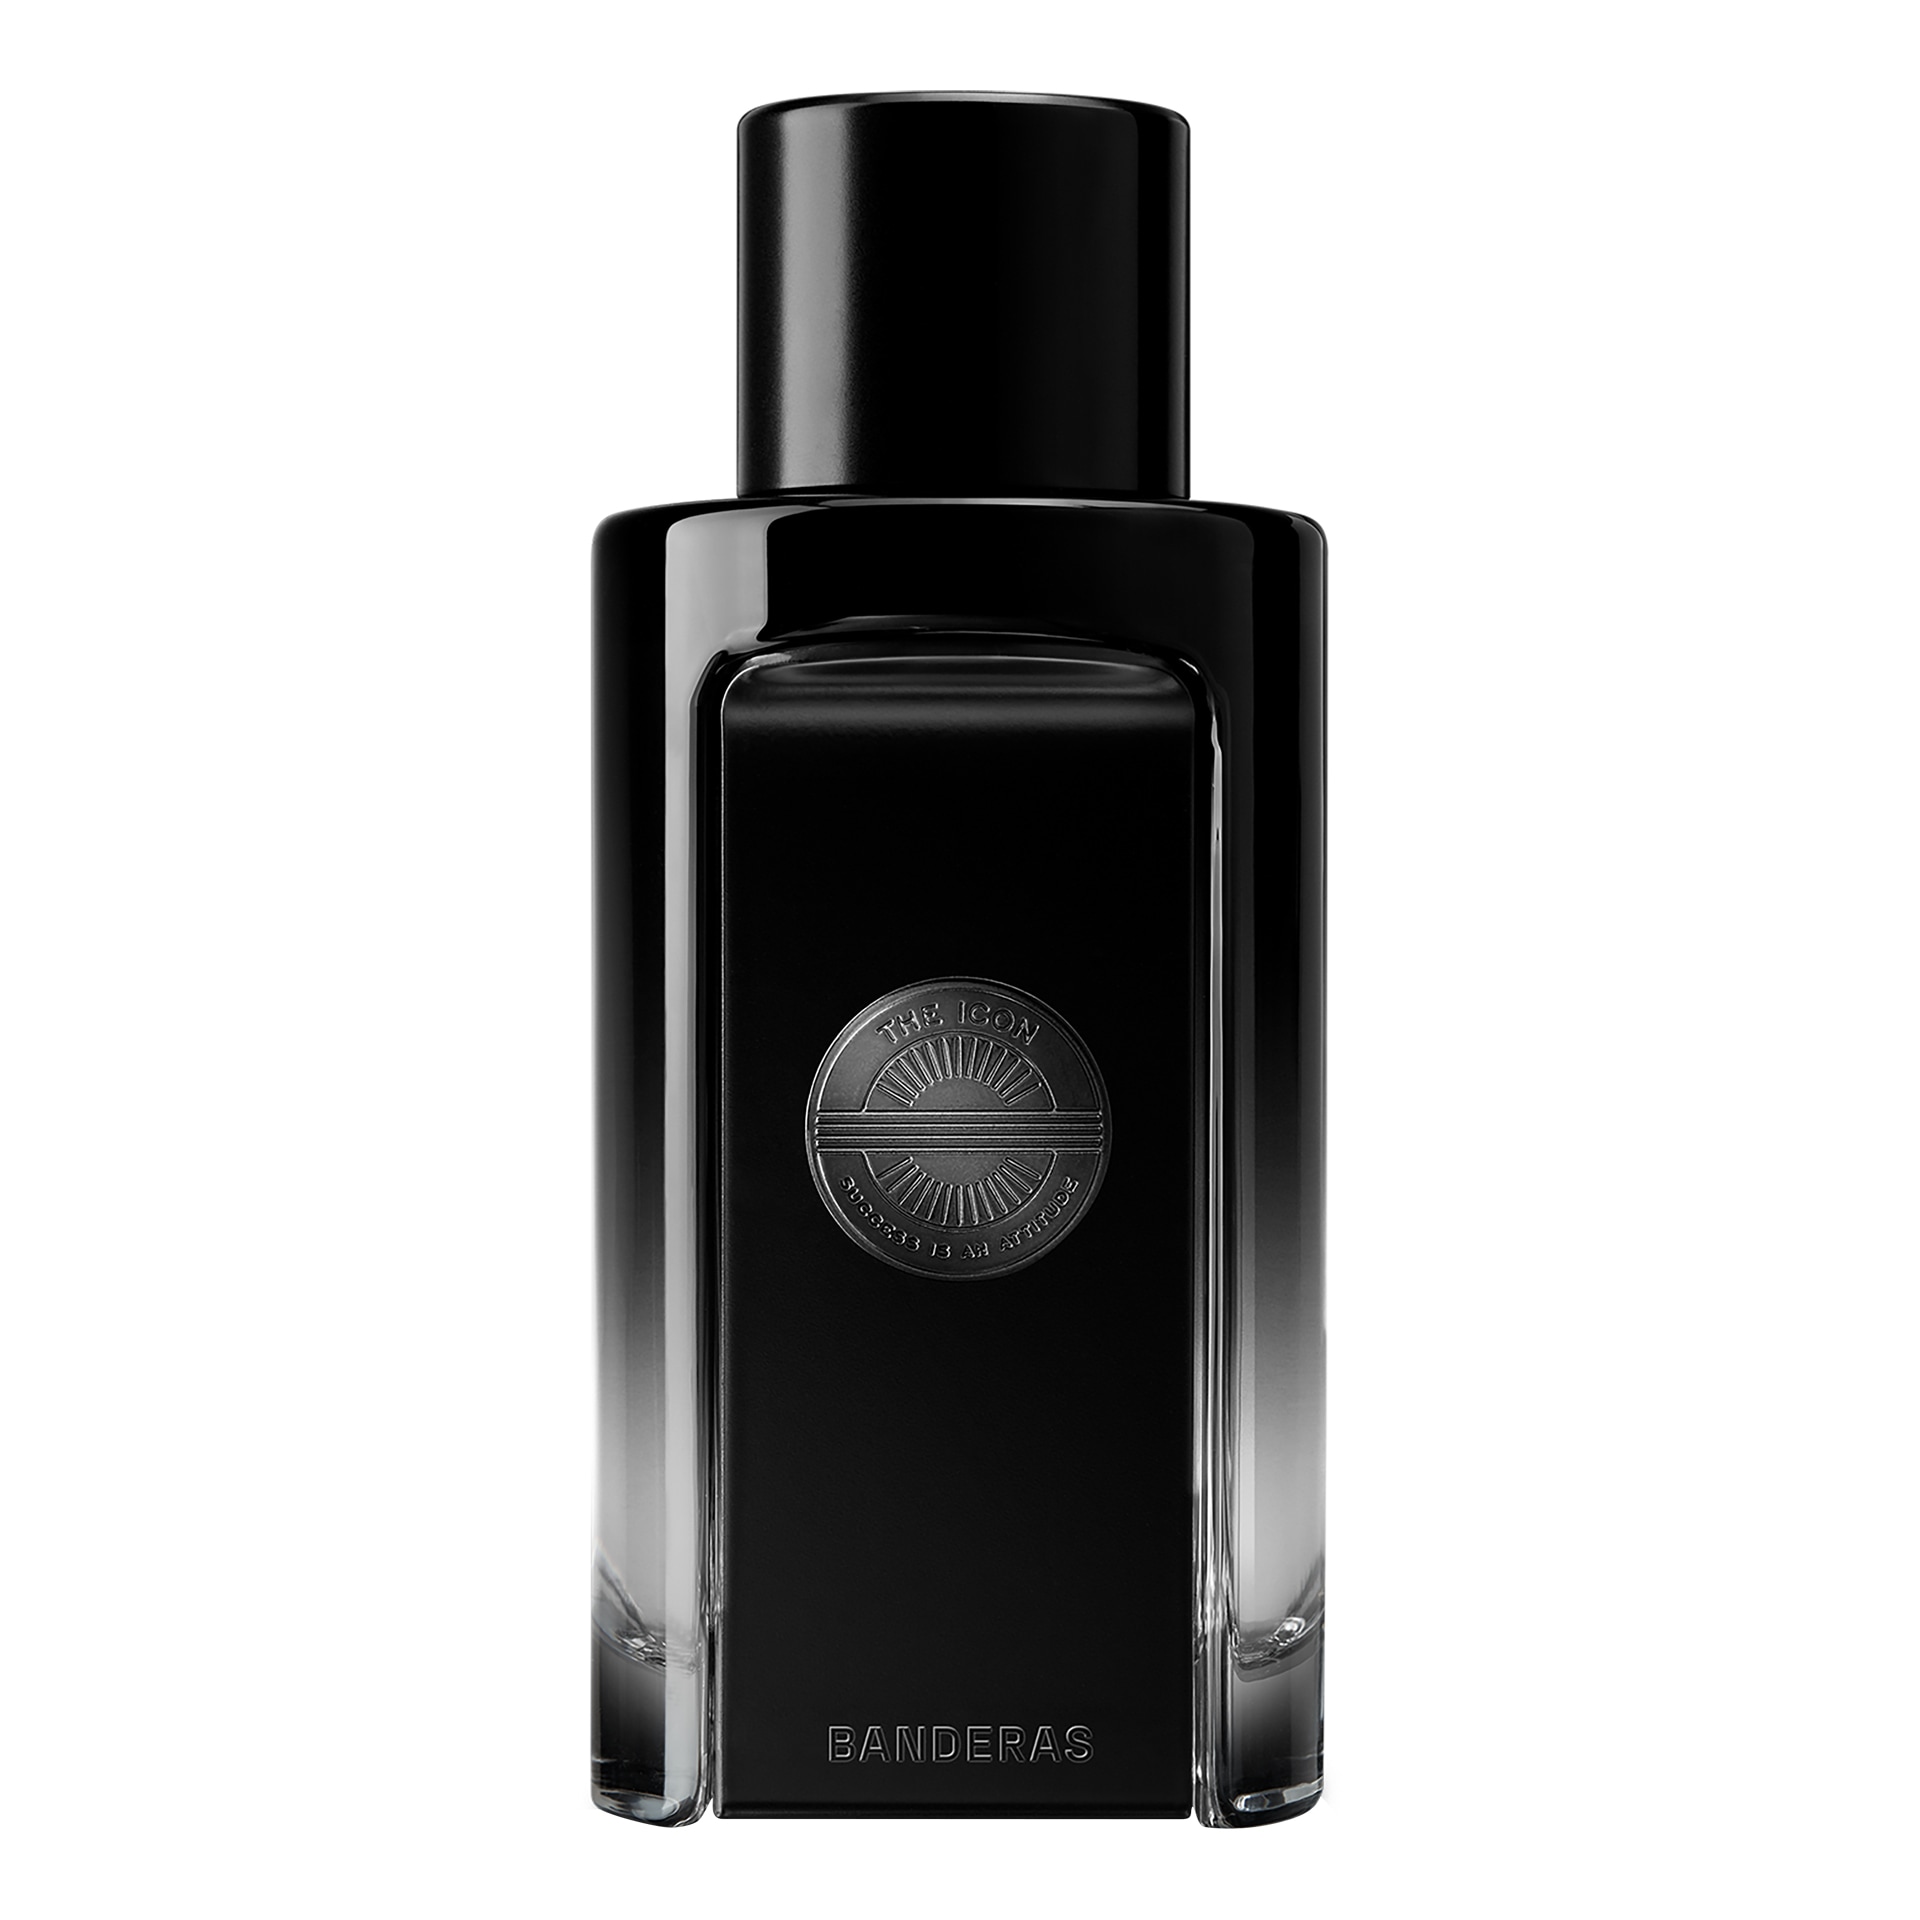 Вода парфюмерная Banderas The Icon Perfume, 100 мл сильные слабости как превратить свои минусы в плюсы и стать счастливой